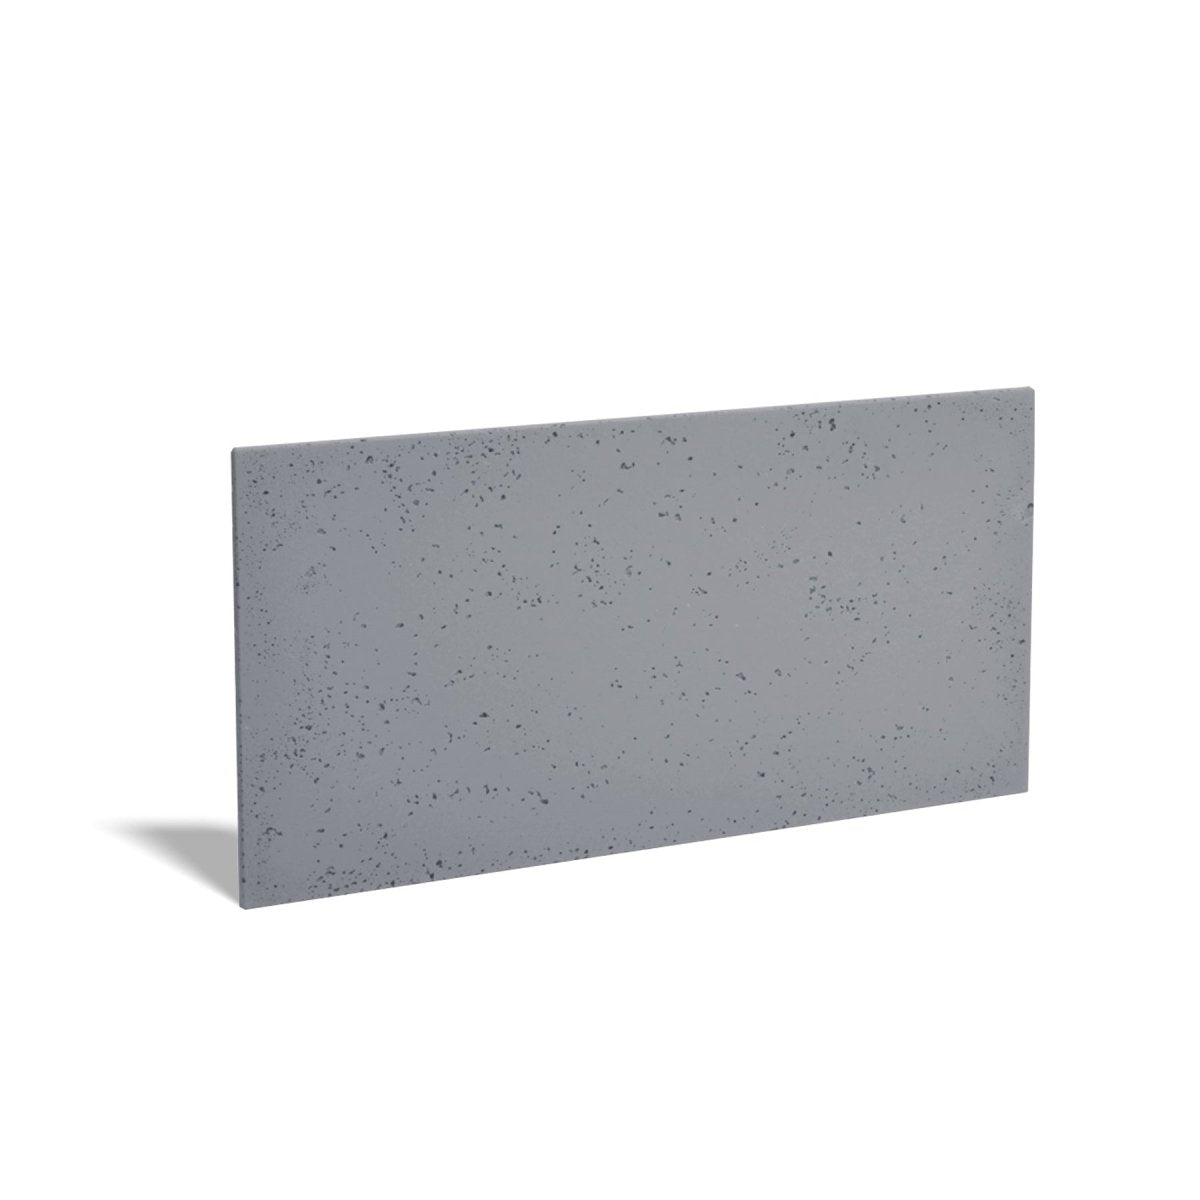 2D Concrete wall panels - DecorMania.eu